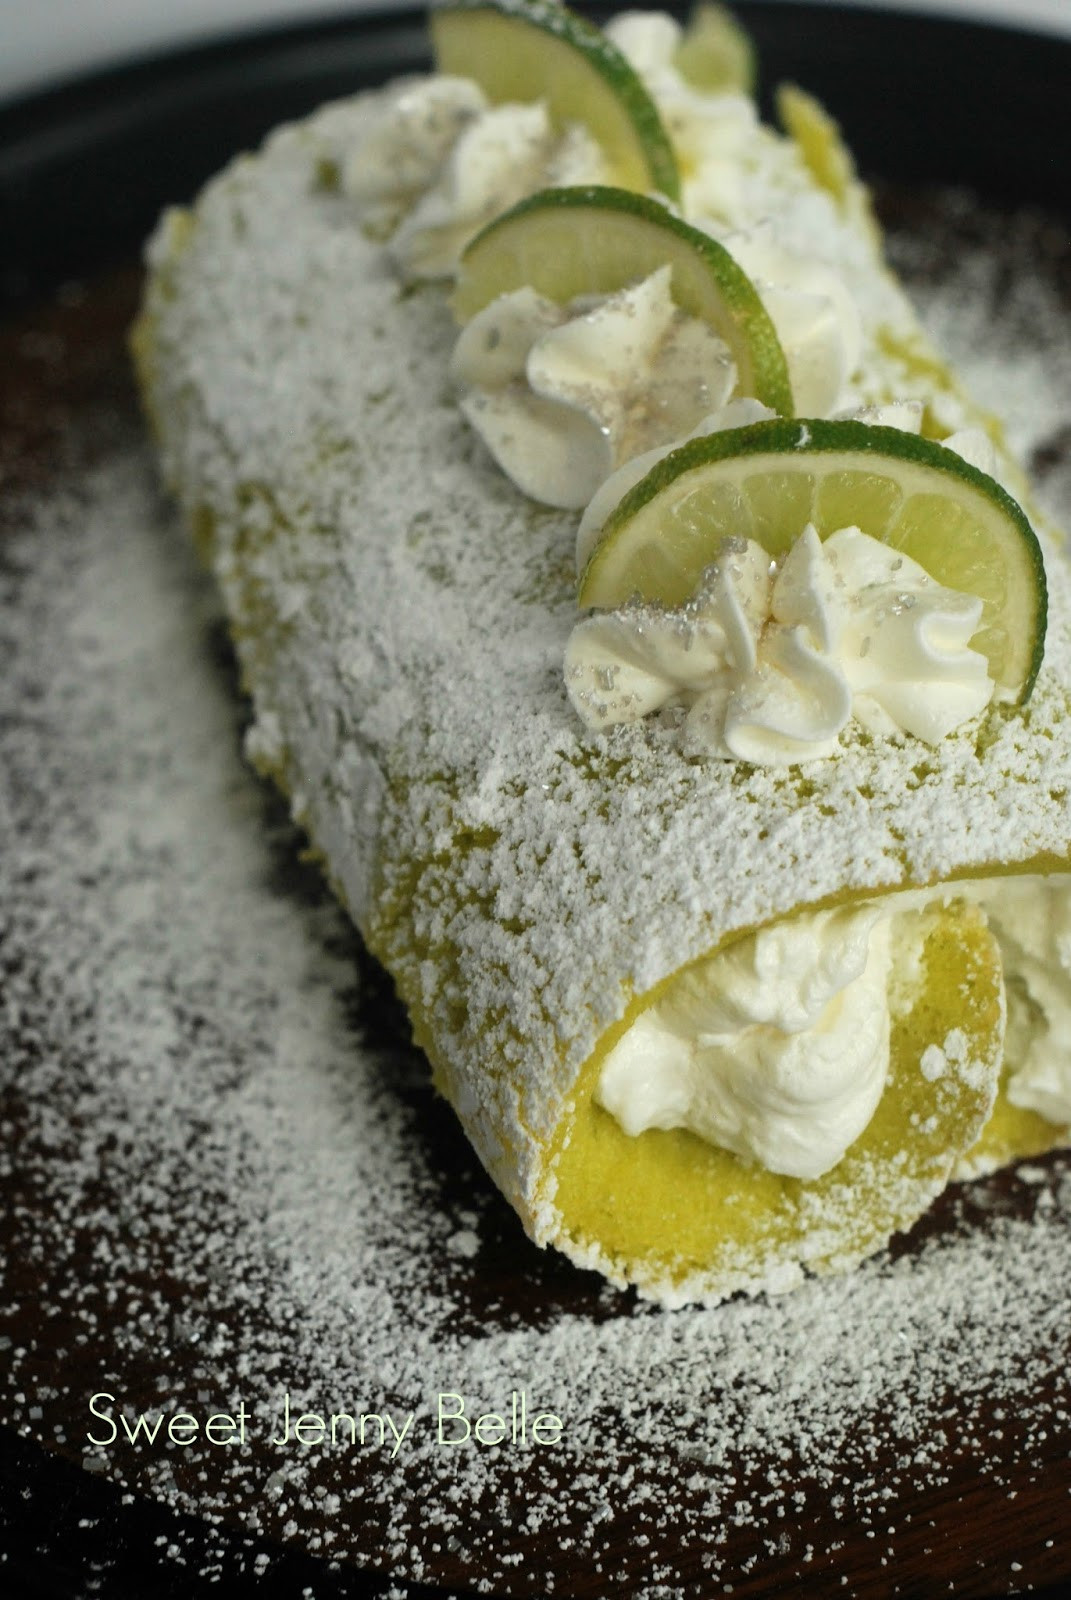 Cinco De Mayo Dessert Recipes
 Lime Margarita Cake Roll Cinco de Mayo Dessert